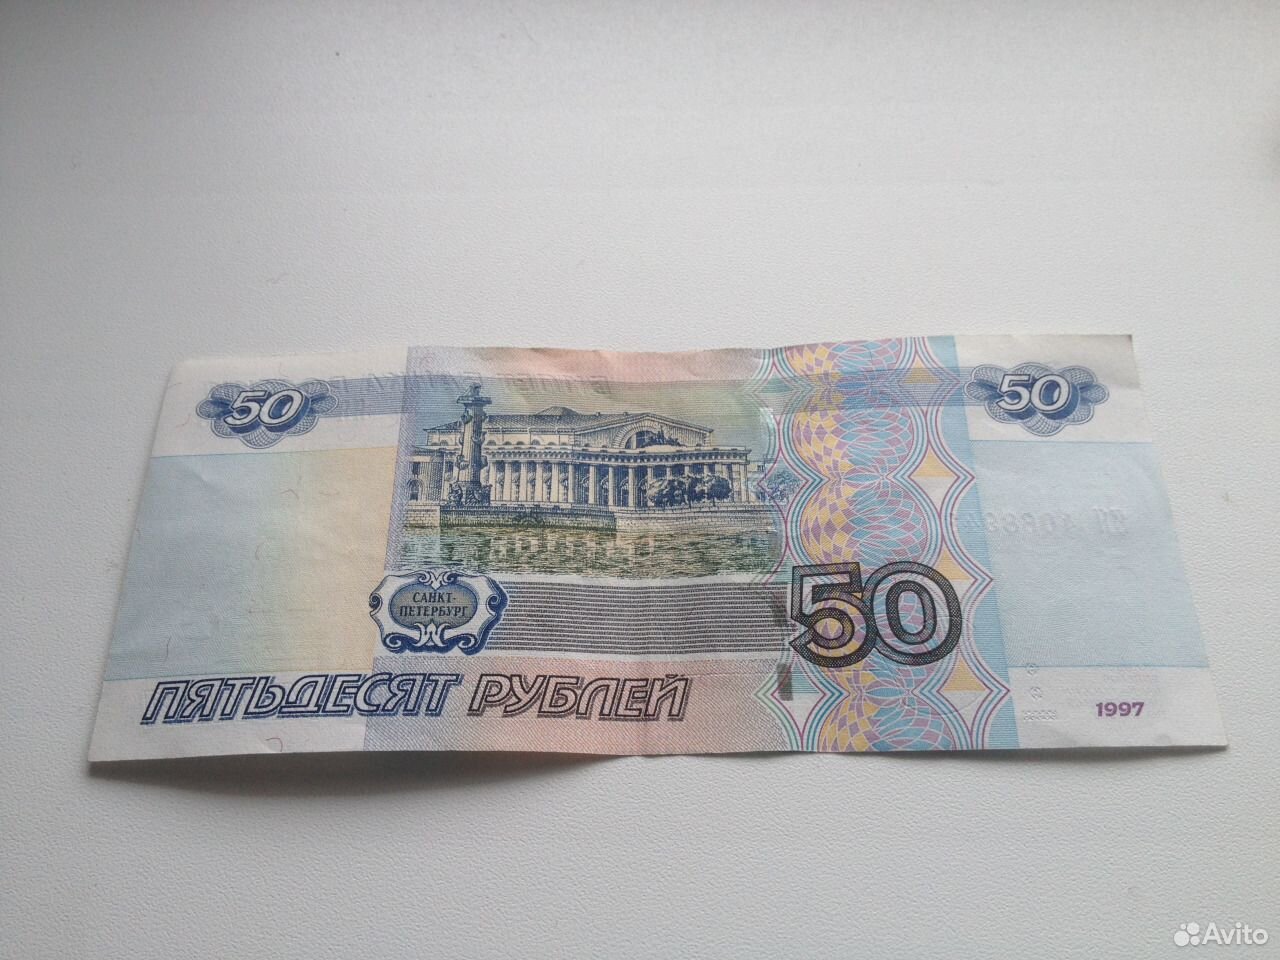 50 рублей россии. 50 Рублей. Купюра 50 рублей. Фотография 50 рублей. Пятьдесят рублей.